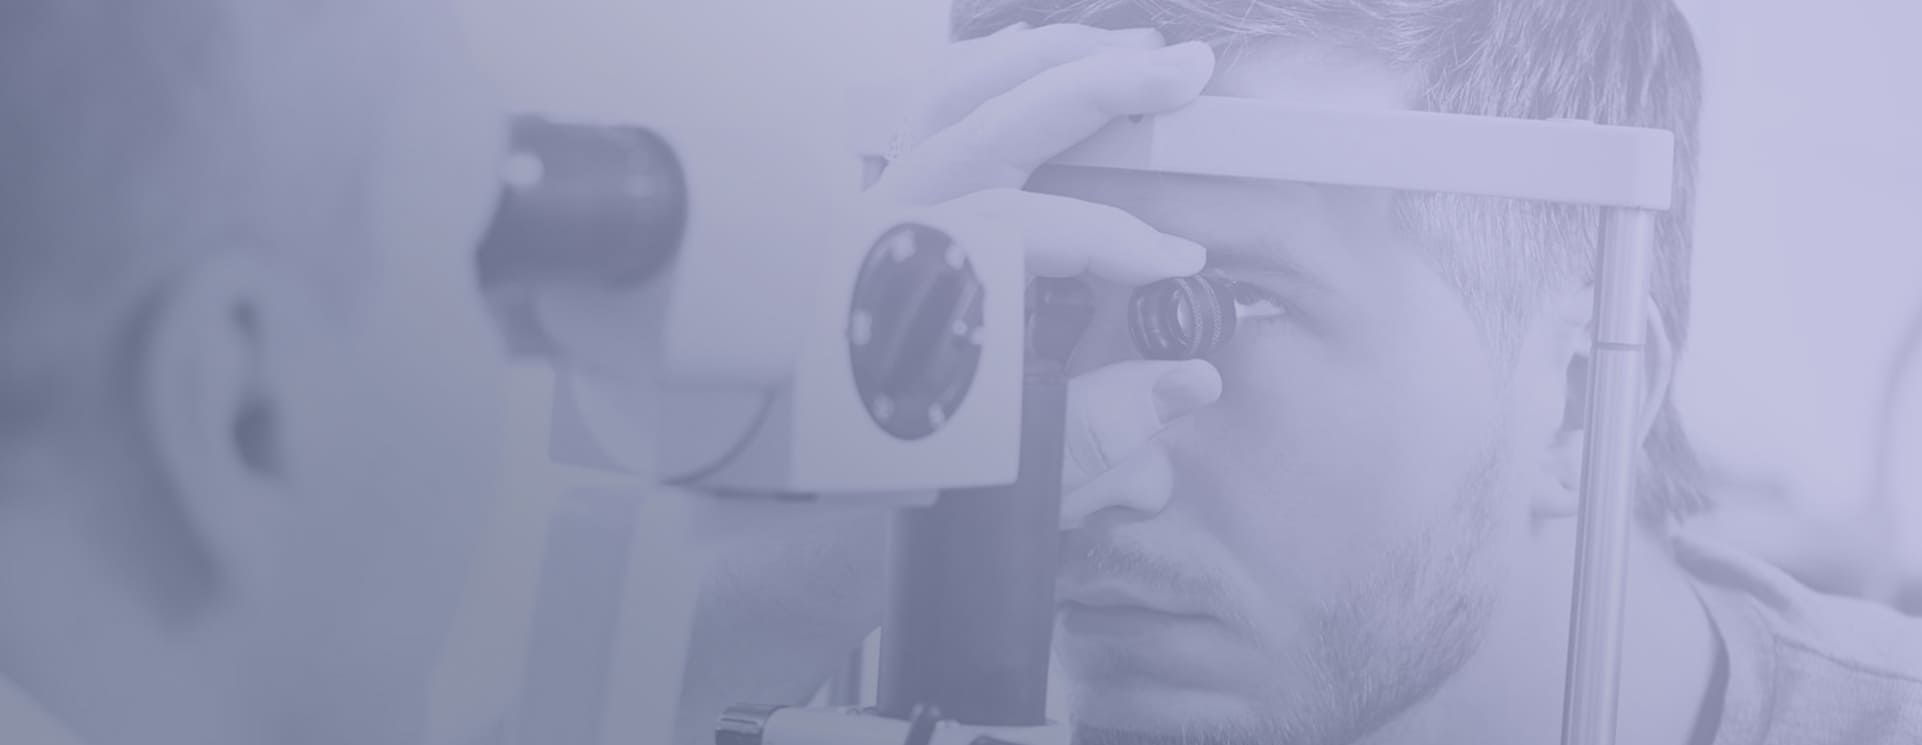 Podstawy optyki okularowej – I stopień – kurs online